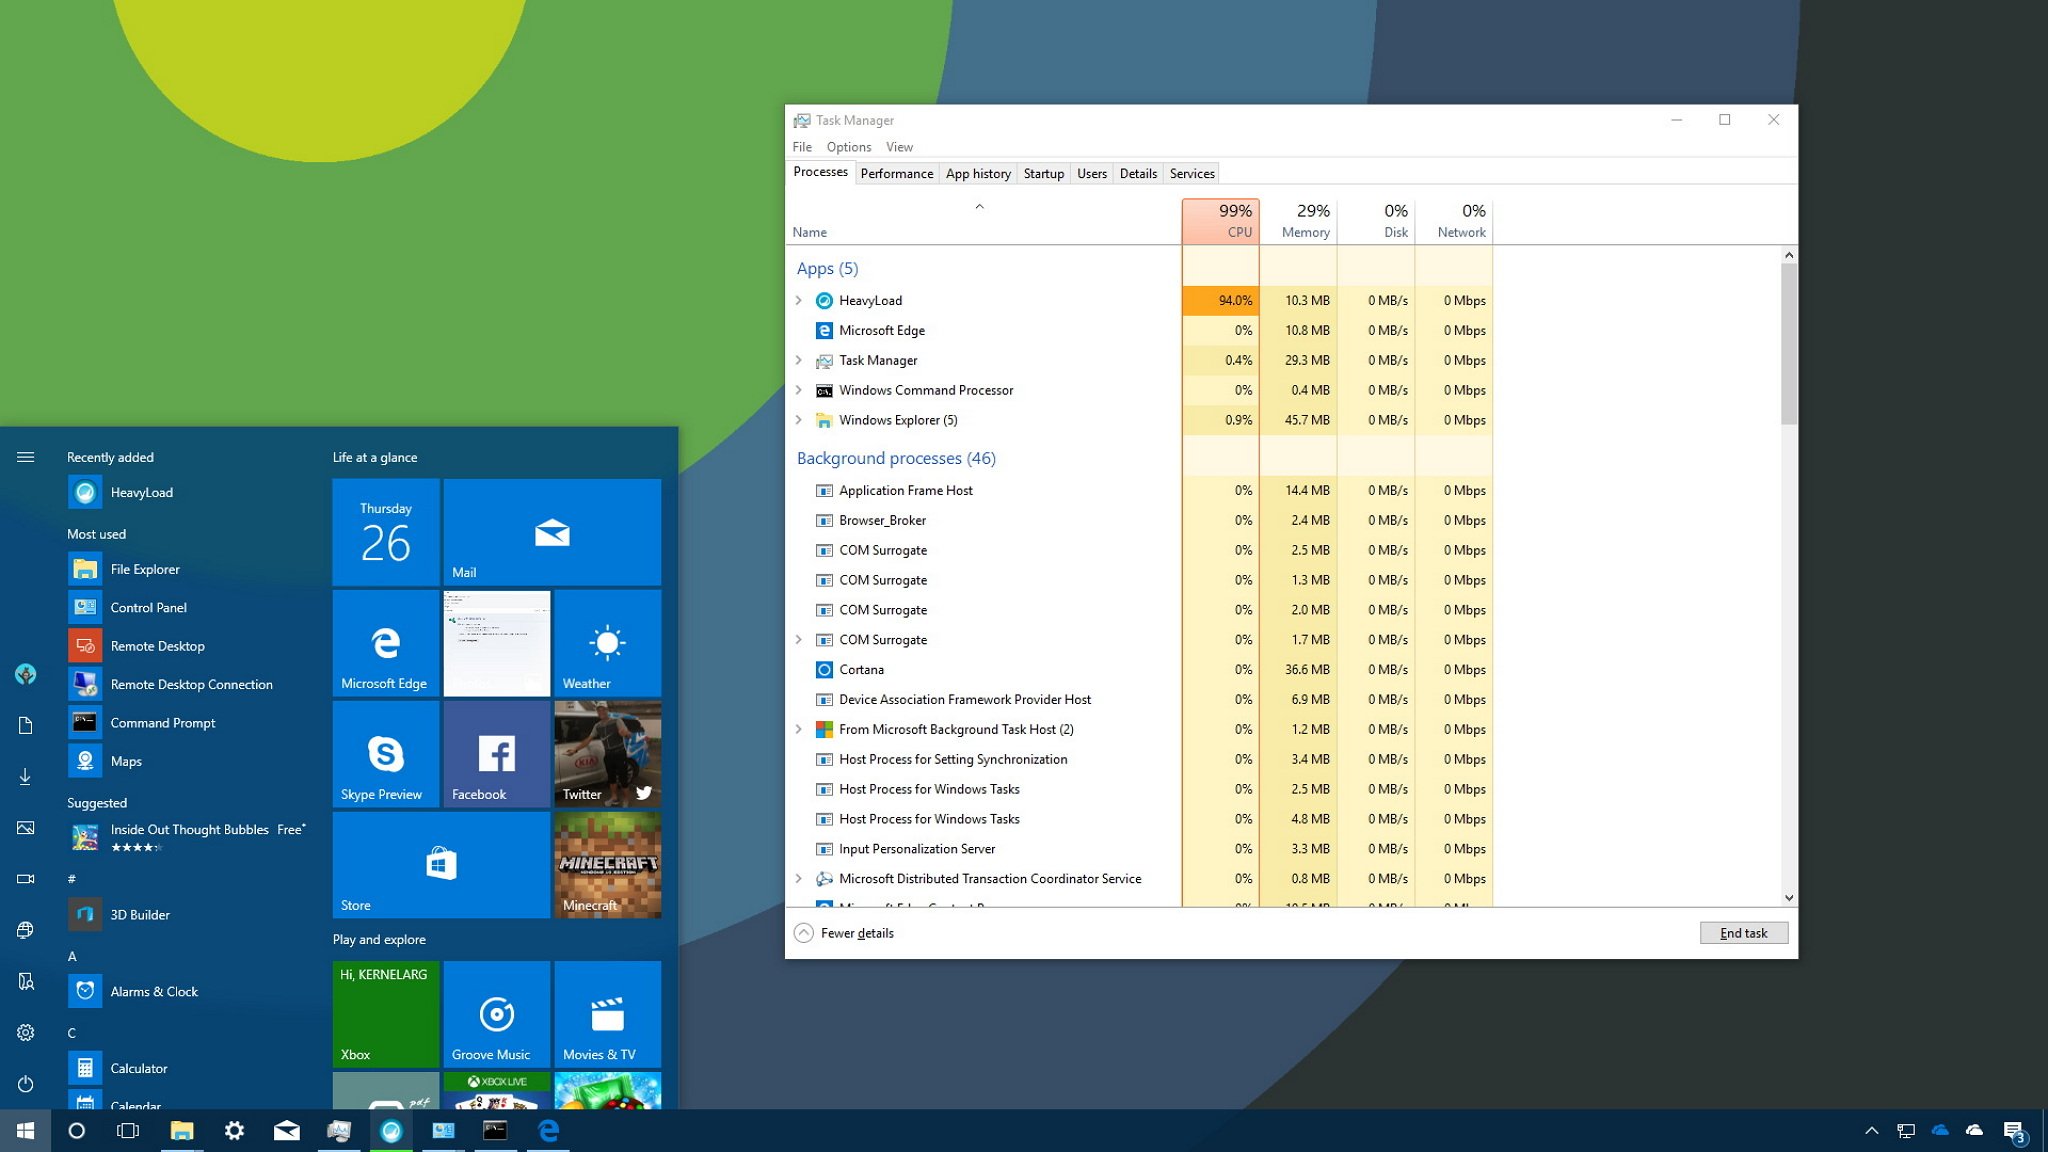 Windows 10 Task Manager là một công cụ rất hữu ích cho việc quản lý và kiểm soát tài nguyên trên máy tính. Đến với bộ sưu tập hình ảnh, bạn sẽ thấy các chức năng và tính năng mới của Task Manager, giúp tối ưu hoá tài nguyên và tăng tốc độ máy tính của bạn.